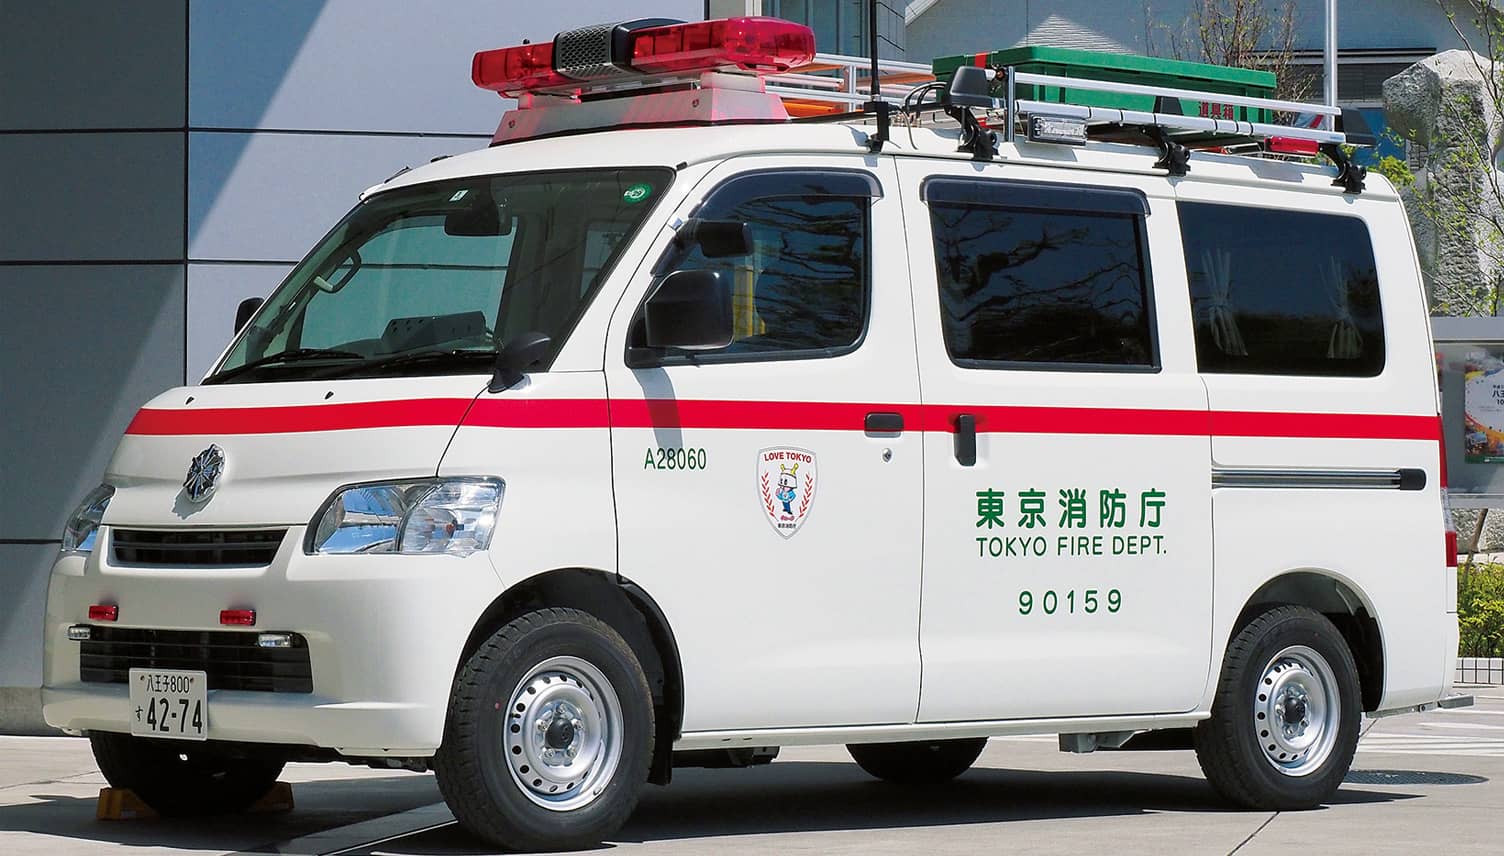 山岳対応用特殊救急車 東京消防庁 | 消防・レスキューの専門サイト「J 